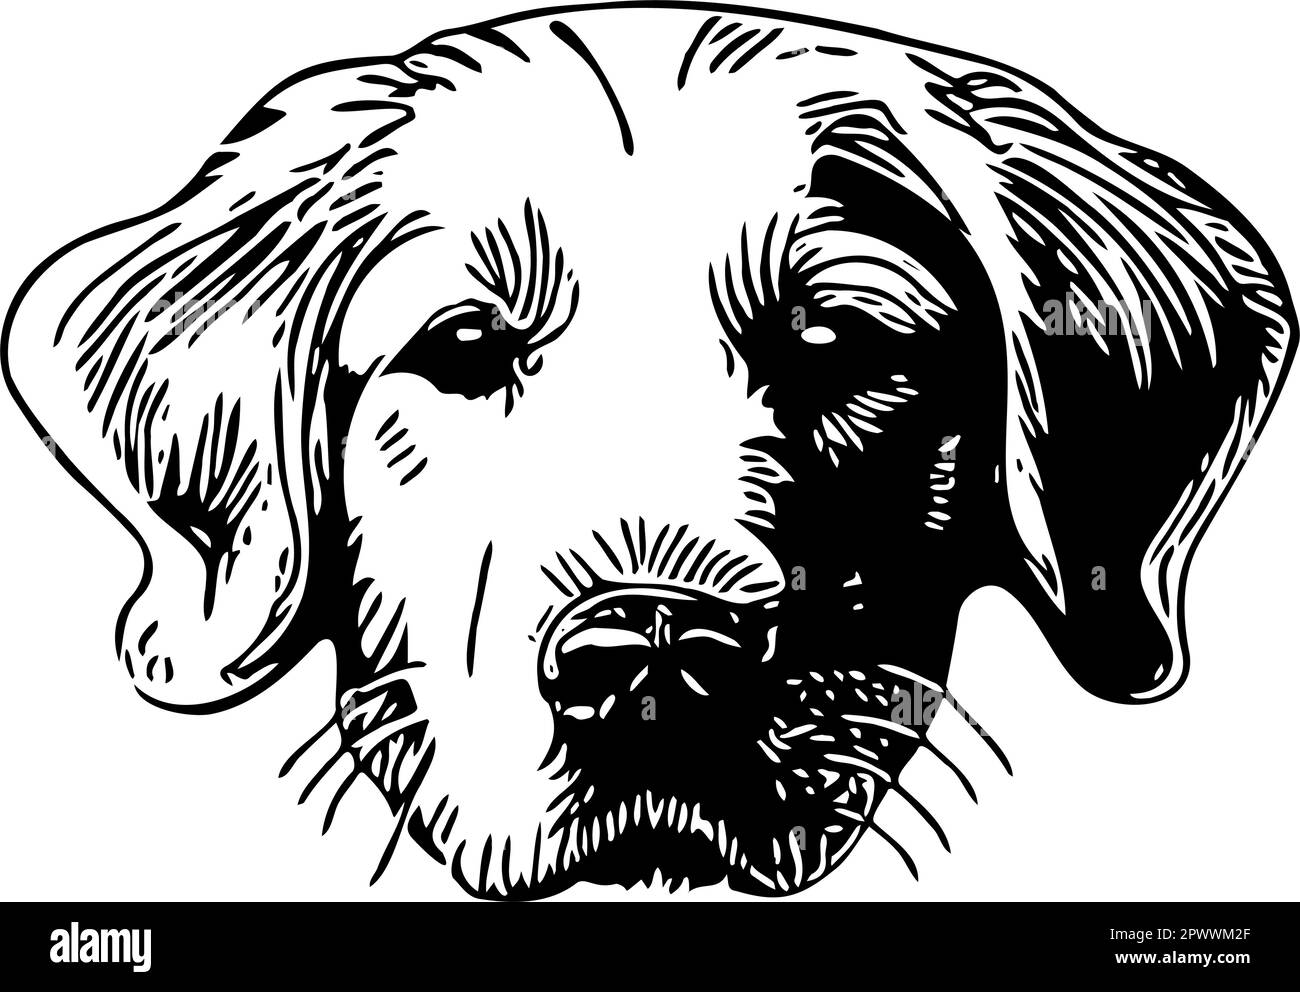 Golden Retriever-Hunde werden als Vektor von äußeren Linien angeführt. Die Ohren sind vorsichtig nach oben gerichtet. Schwarze Linien vor transparentem Hintergrund. Stock Vektor